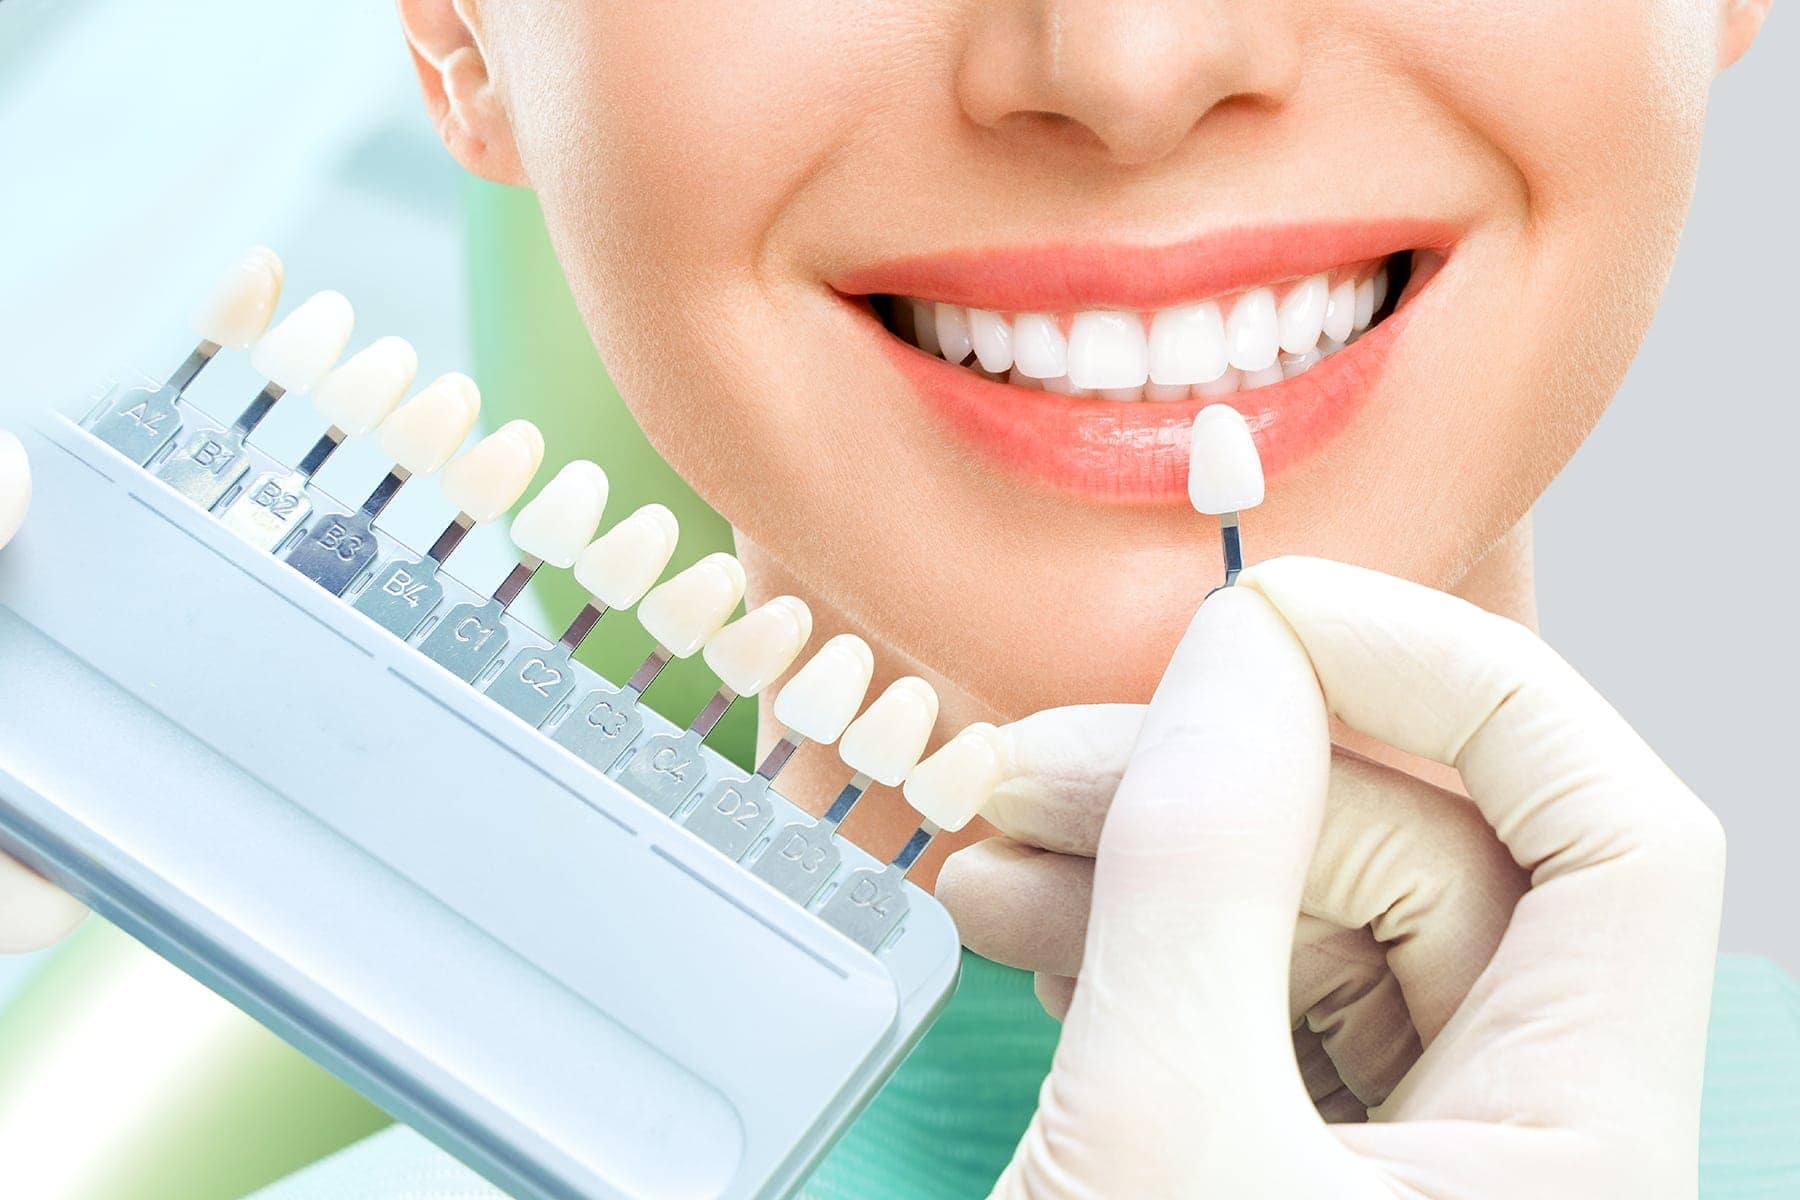 ‘Enlightening’ Your Smile at The Harrogate Dentist